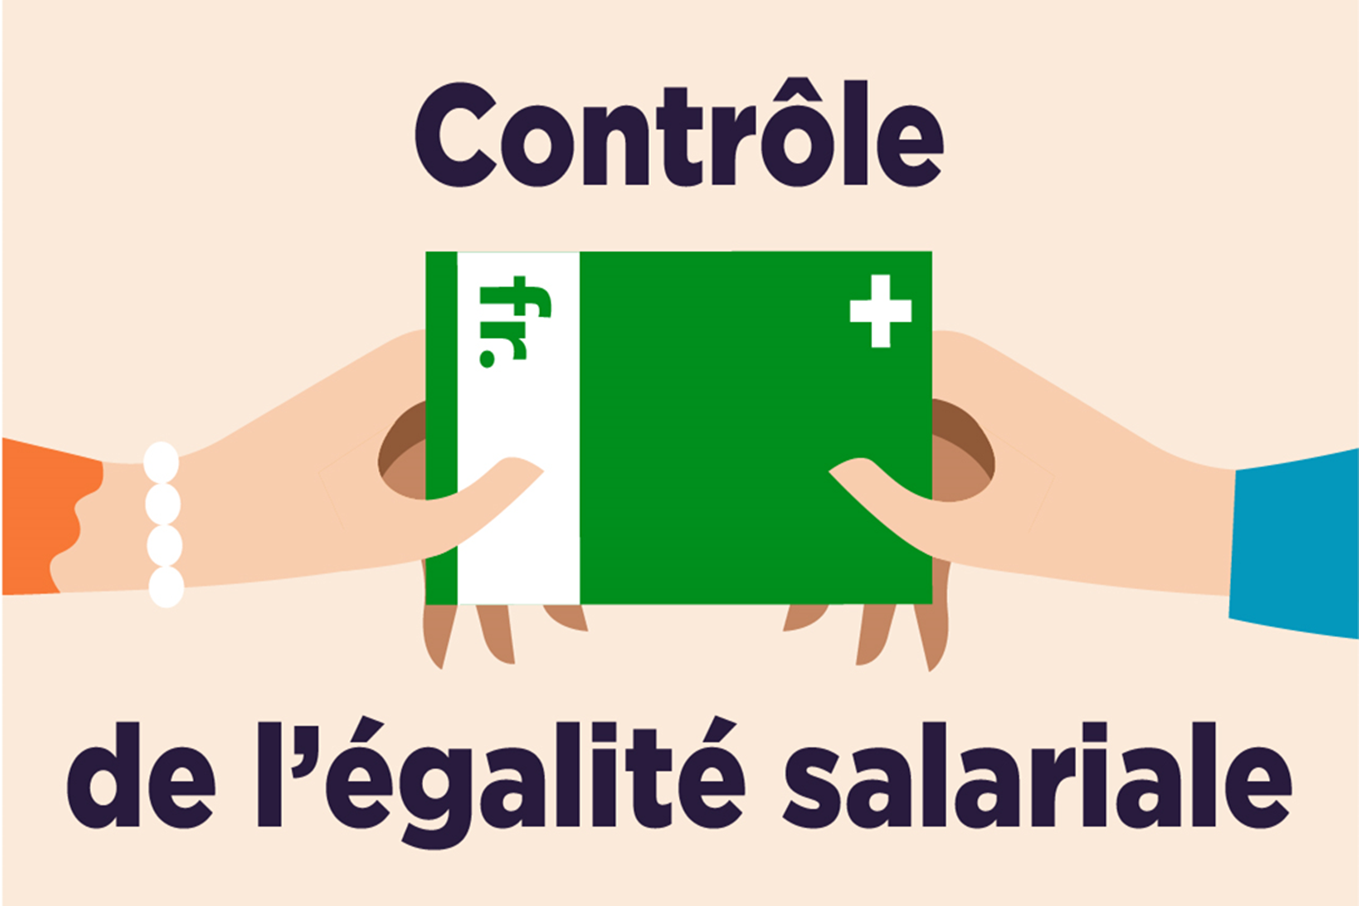 Illustration titre de la vidéo sur le contrôle de l'égalité salariale